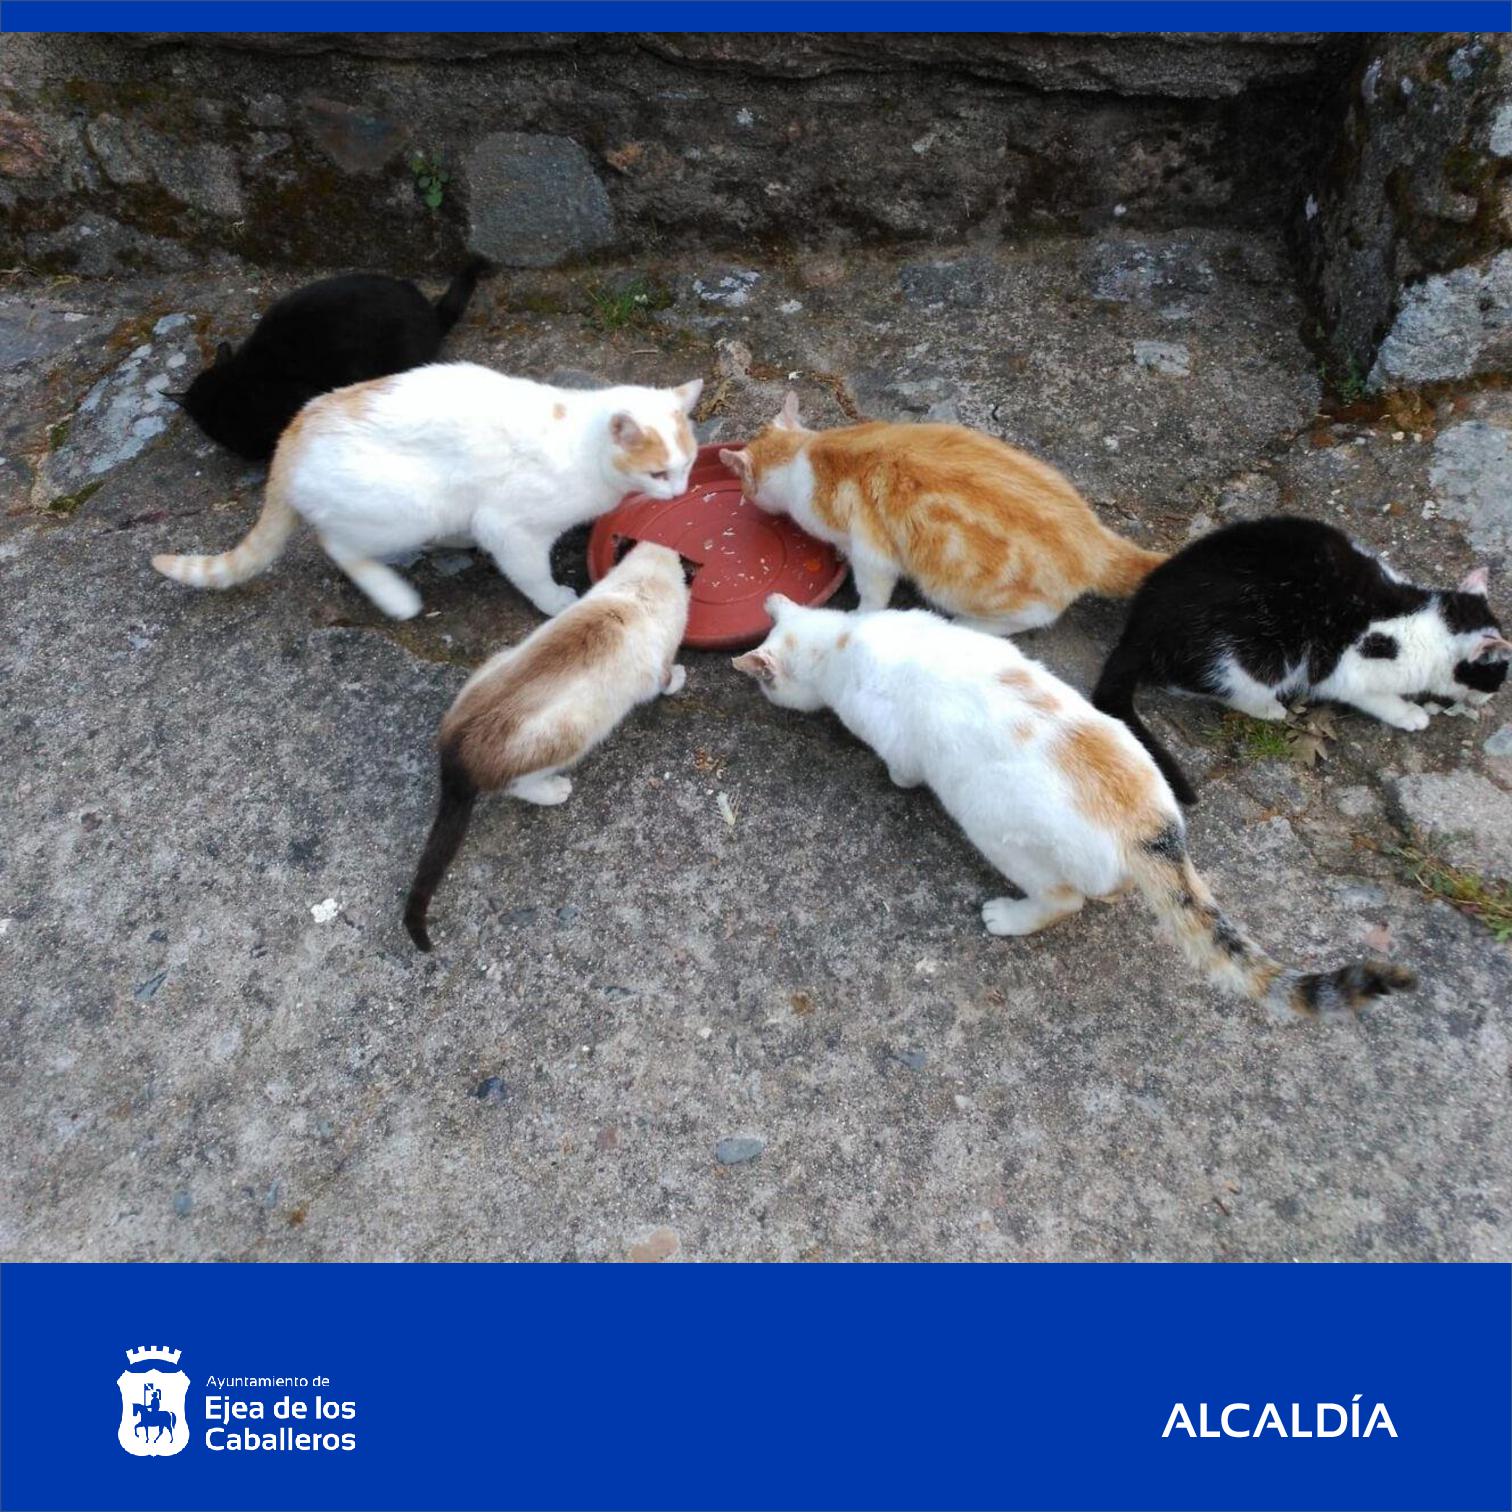 En este momento estás viendo El Ayuntamiento de Ejea aprueba implantar progresivamente el método CER en colonias felinas